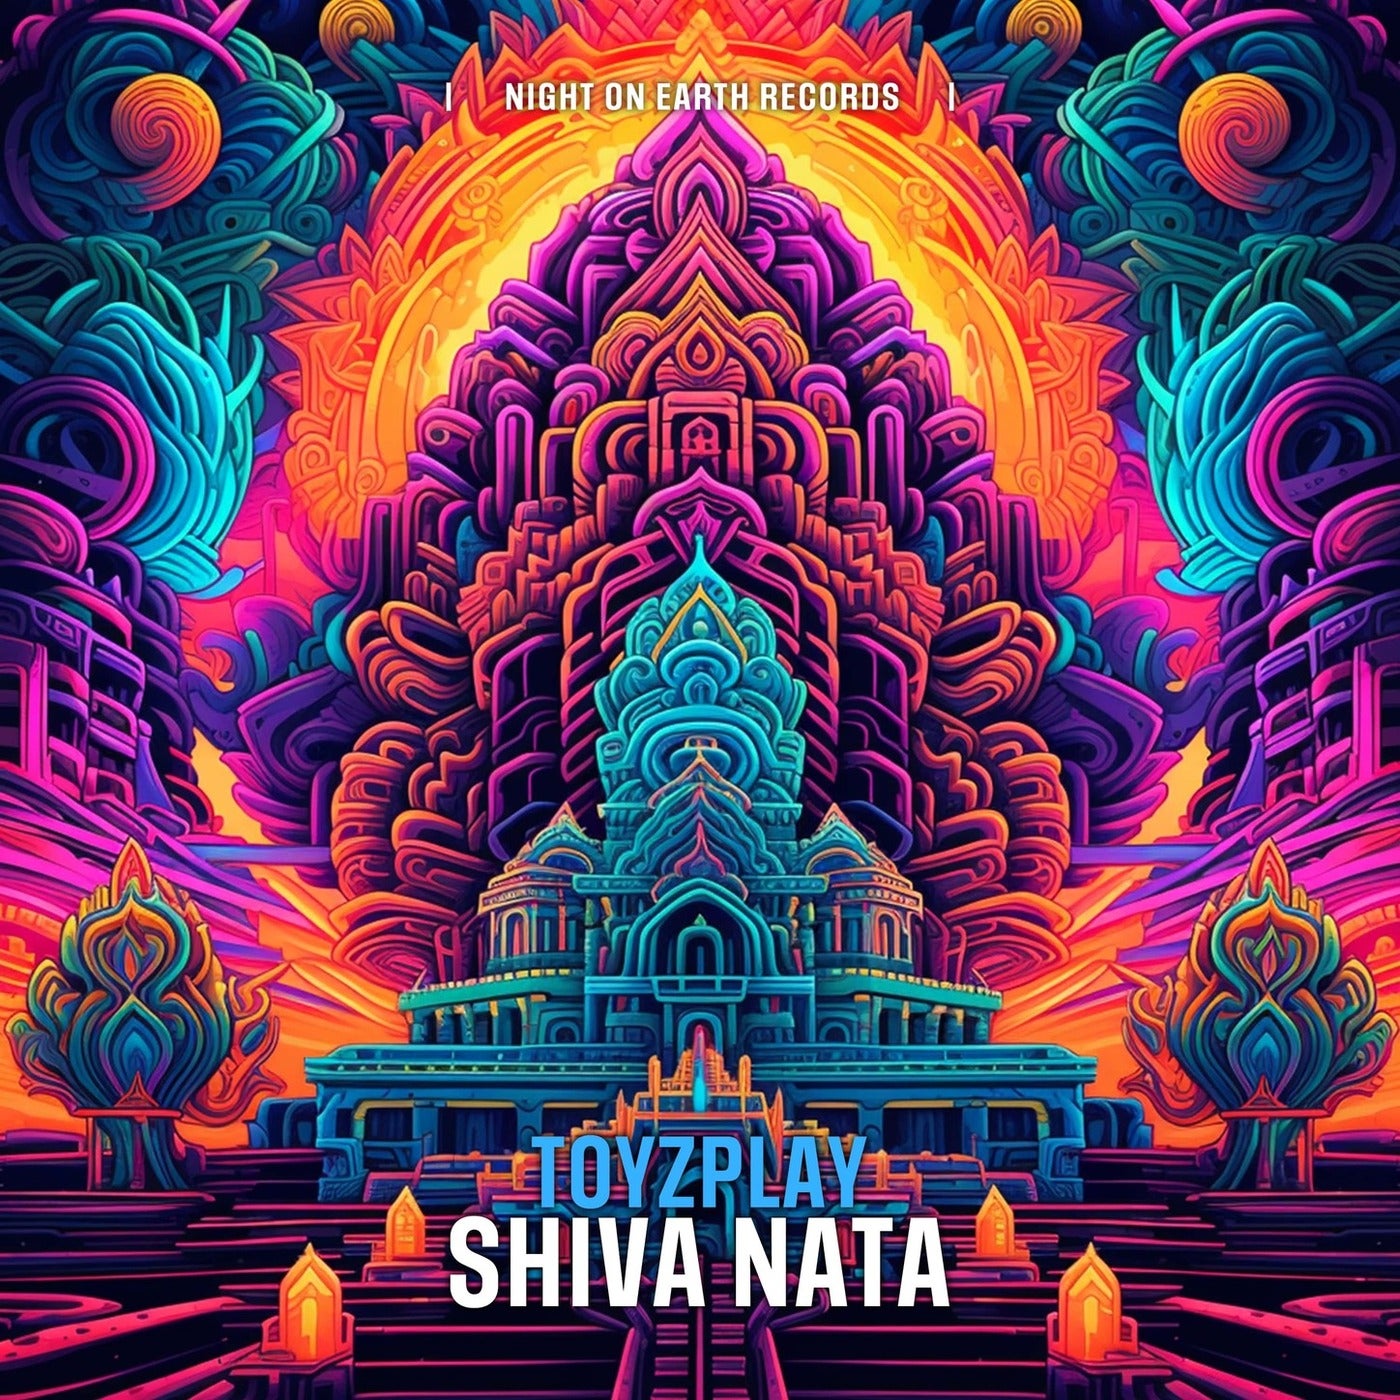 Shiva Nata